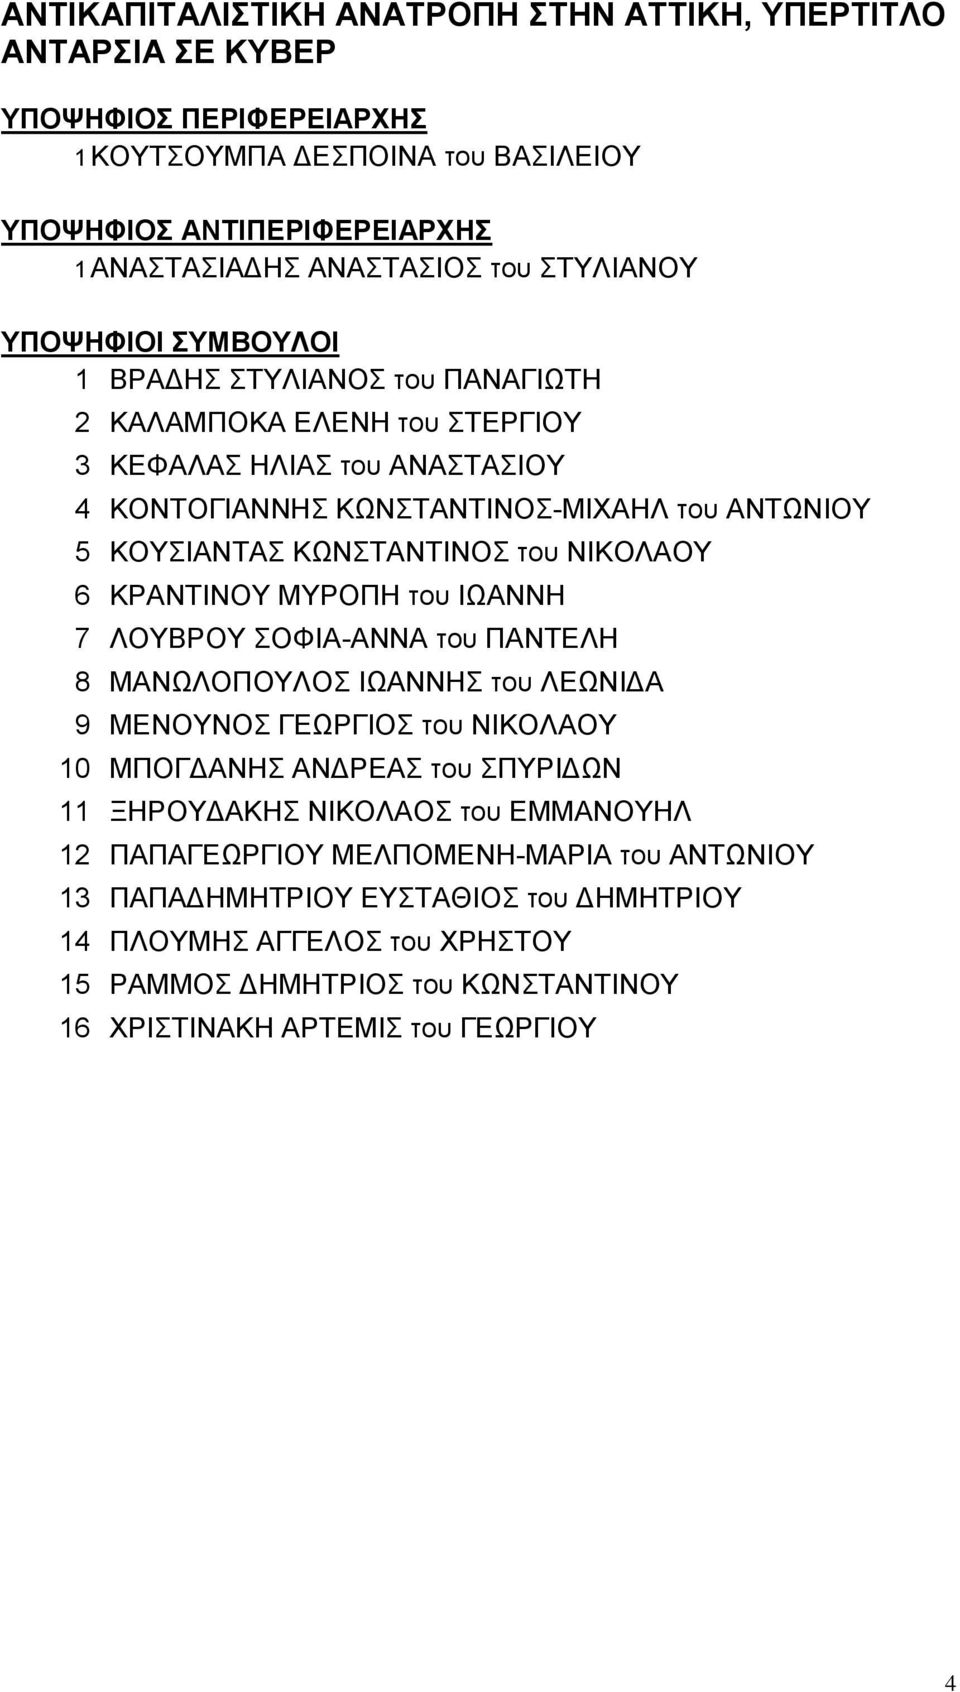 ΛΟΥΒΡΟΥ ΣΟΦΙΑ-ΑΝΝΑ του ΠΑΝΤΕΛΗ 8 ΜΑΝΩΛΟΠΟΥΛΟΣ ΙΩΑΝΝΗΣ του ΛΕΩΝΙΔΑ 9 ΜΕΝΟΥΝΟΣ ΓΕΩΡΓΙΟΣ του ΝΙΚΟΛΑΟΥ 10 ΜΠΟΓΔΑΝΗΣ ΑΝΔΡΕΑΣ του ΣΠΥΡΙΔΩΝ 11 ΞΗΡΟΥΔΑΚΗΣ ΝΙΚΟΛΑΟΣ του ΕΜΜΑΝΟΥΗΛ 12